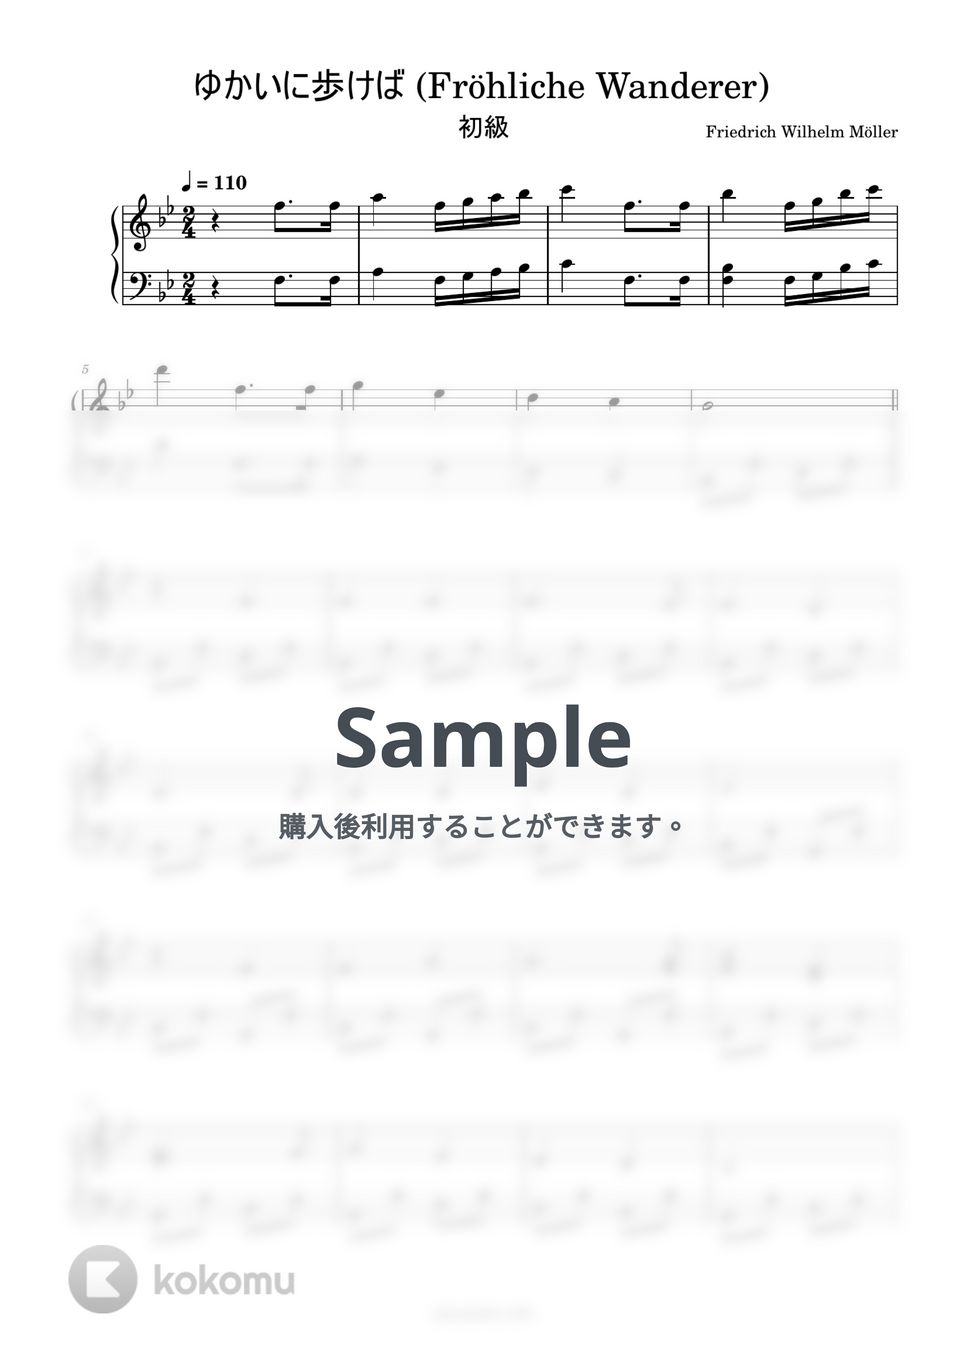 ゆかいに歩けば (簡単楽譜) by ピアノ塾